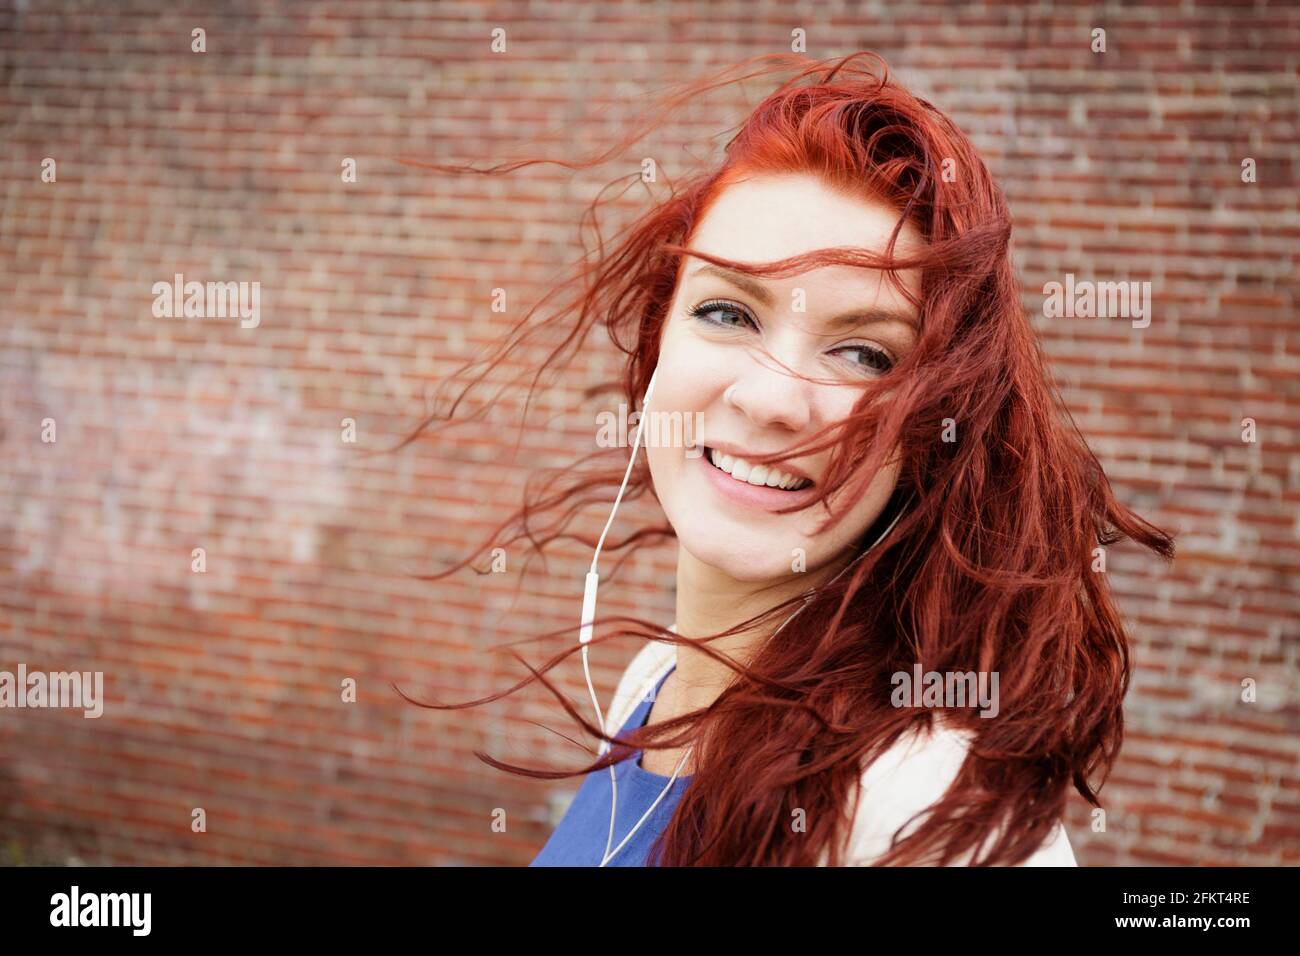 Giovane donna con lunghi capelli rossi, indossa gli auricolari, close-up Foto Stock